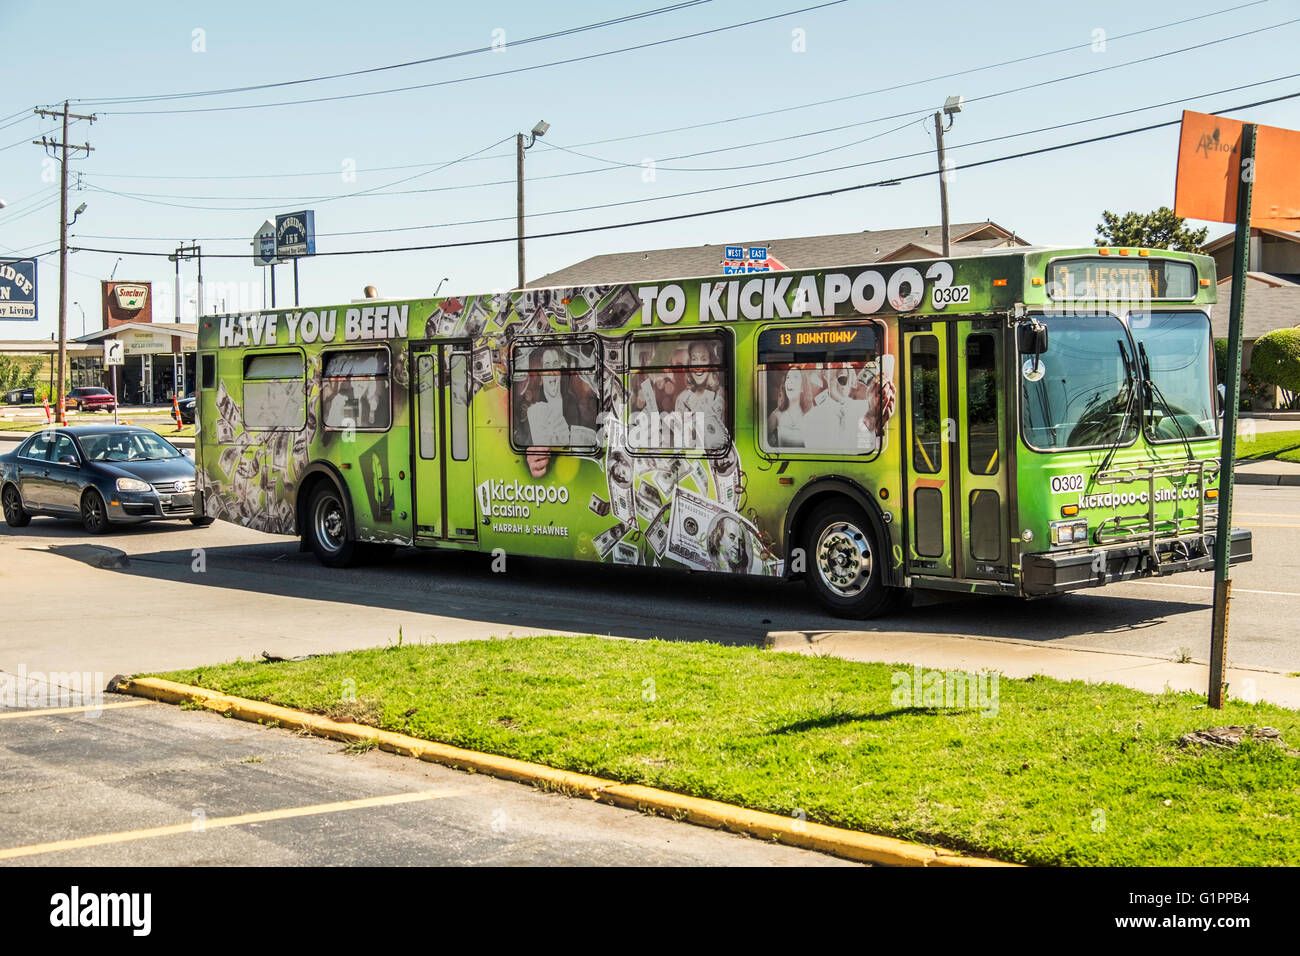 Un autobús de transporte público de la ciudad de Oklahoma en una calle. Publicidad Kickapoo Casino. Oklahoma, Estados Unidos. Foto de stock